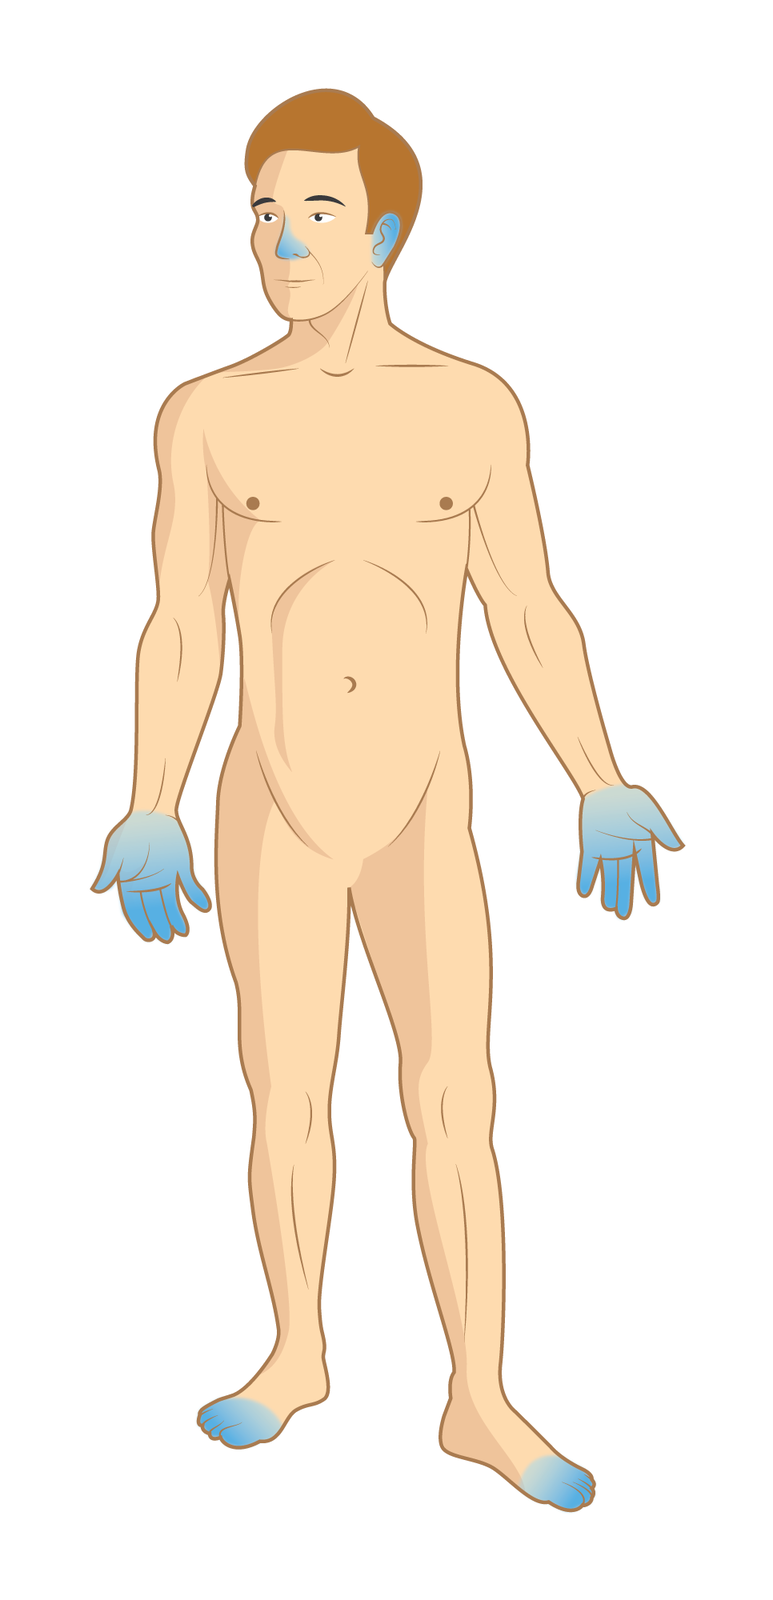 Ilustracja przedstawia mężczyznę bez ubioru. Mężczyzna stoi przodem do obserwatora ilustracji. Części ciała zabarwione na niebiesko wskazują miejsca, które najczęściej ulegają odmrożeniu. Są to: nos, uszy, dłonie oraz palce stóp.